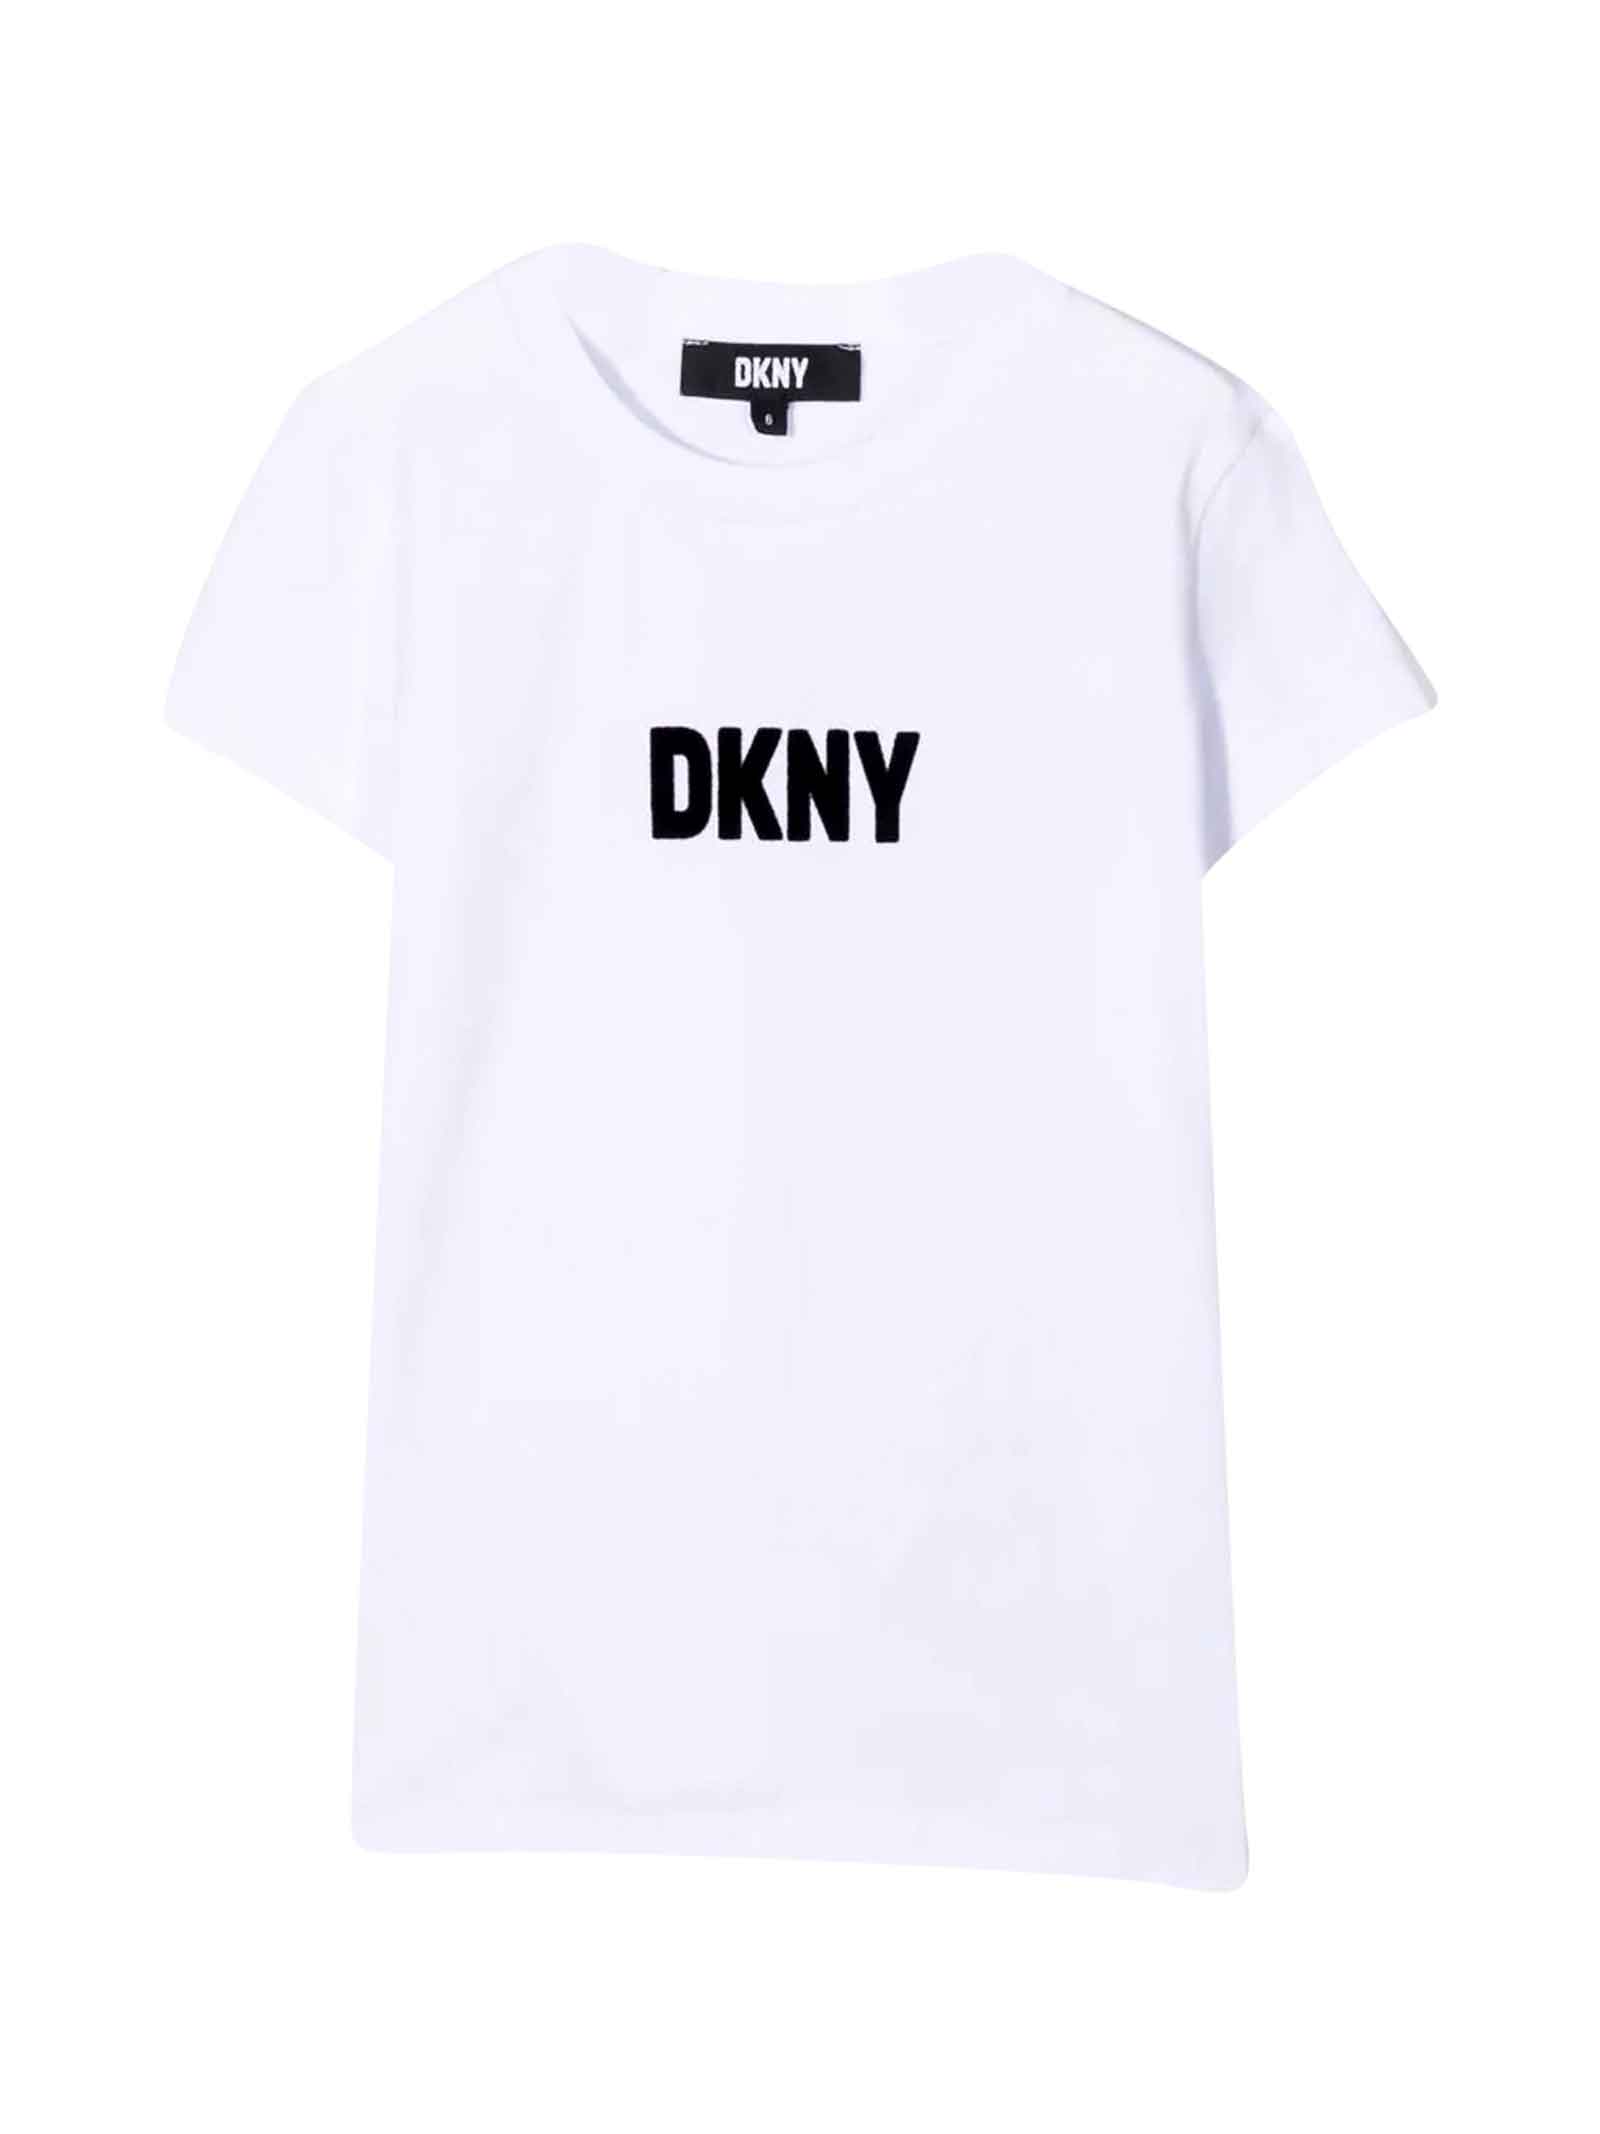 DKNY White T-shirt Girl.